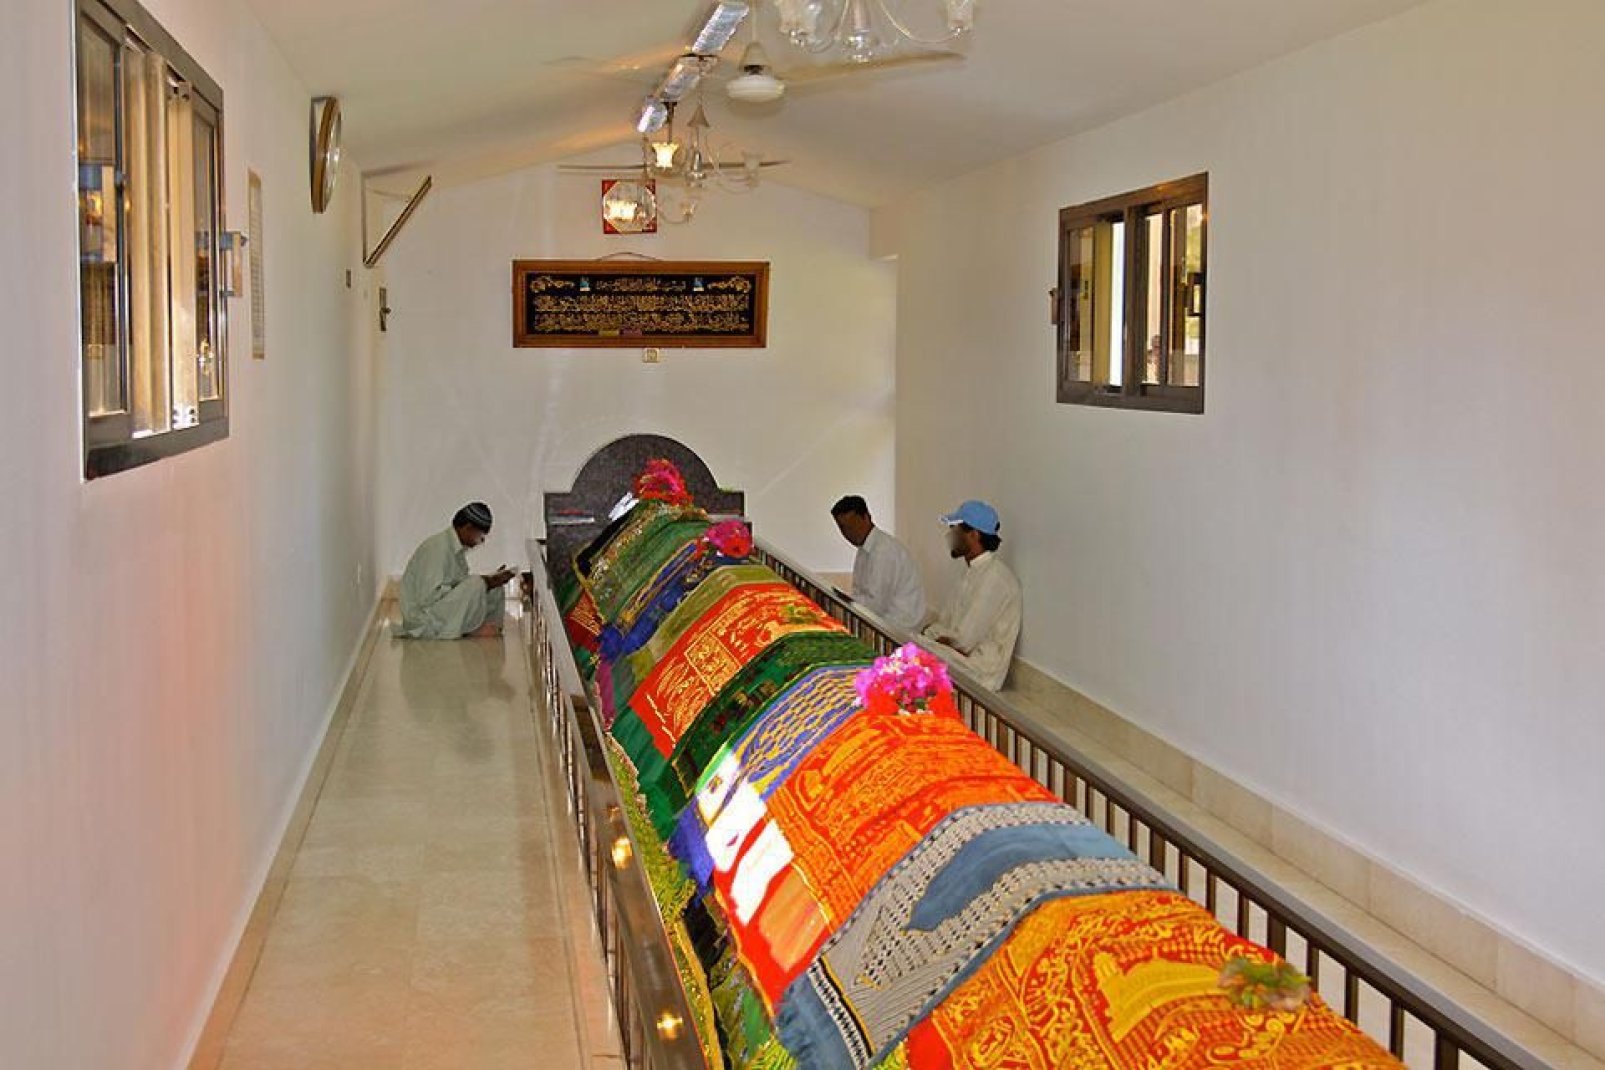 Longue de 8 mètres, recouverte de tapis, ce lieu est sacré pour les habitants qui viennent y prier.